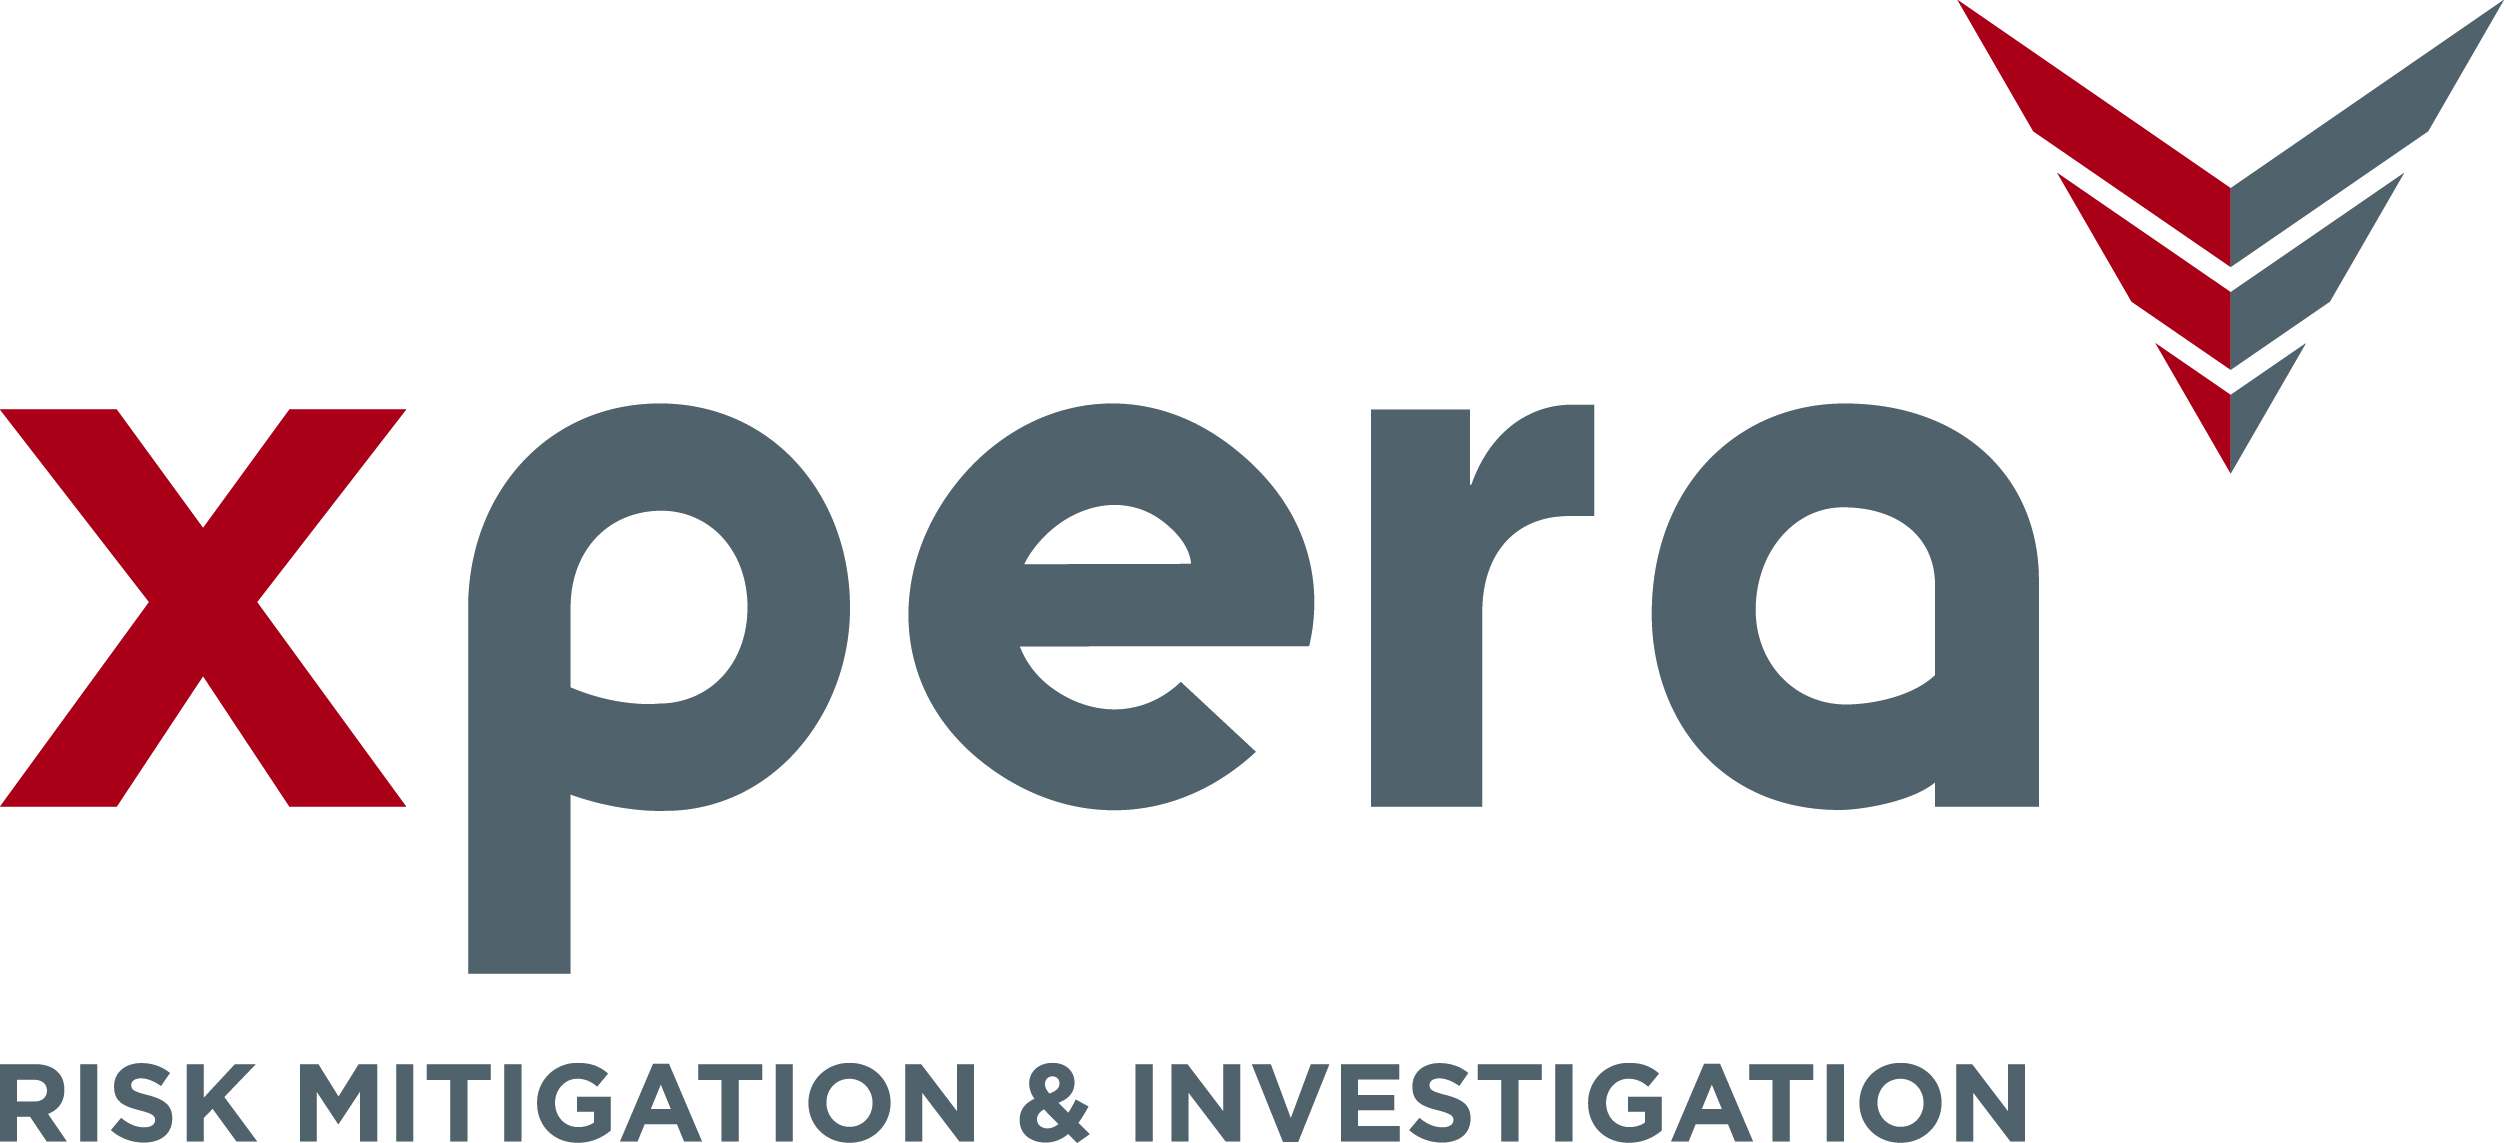 Xpera Risk Mitigation & Investigation